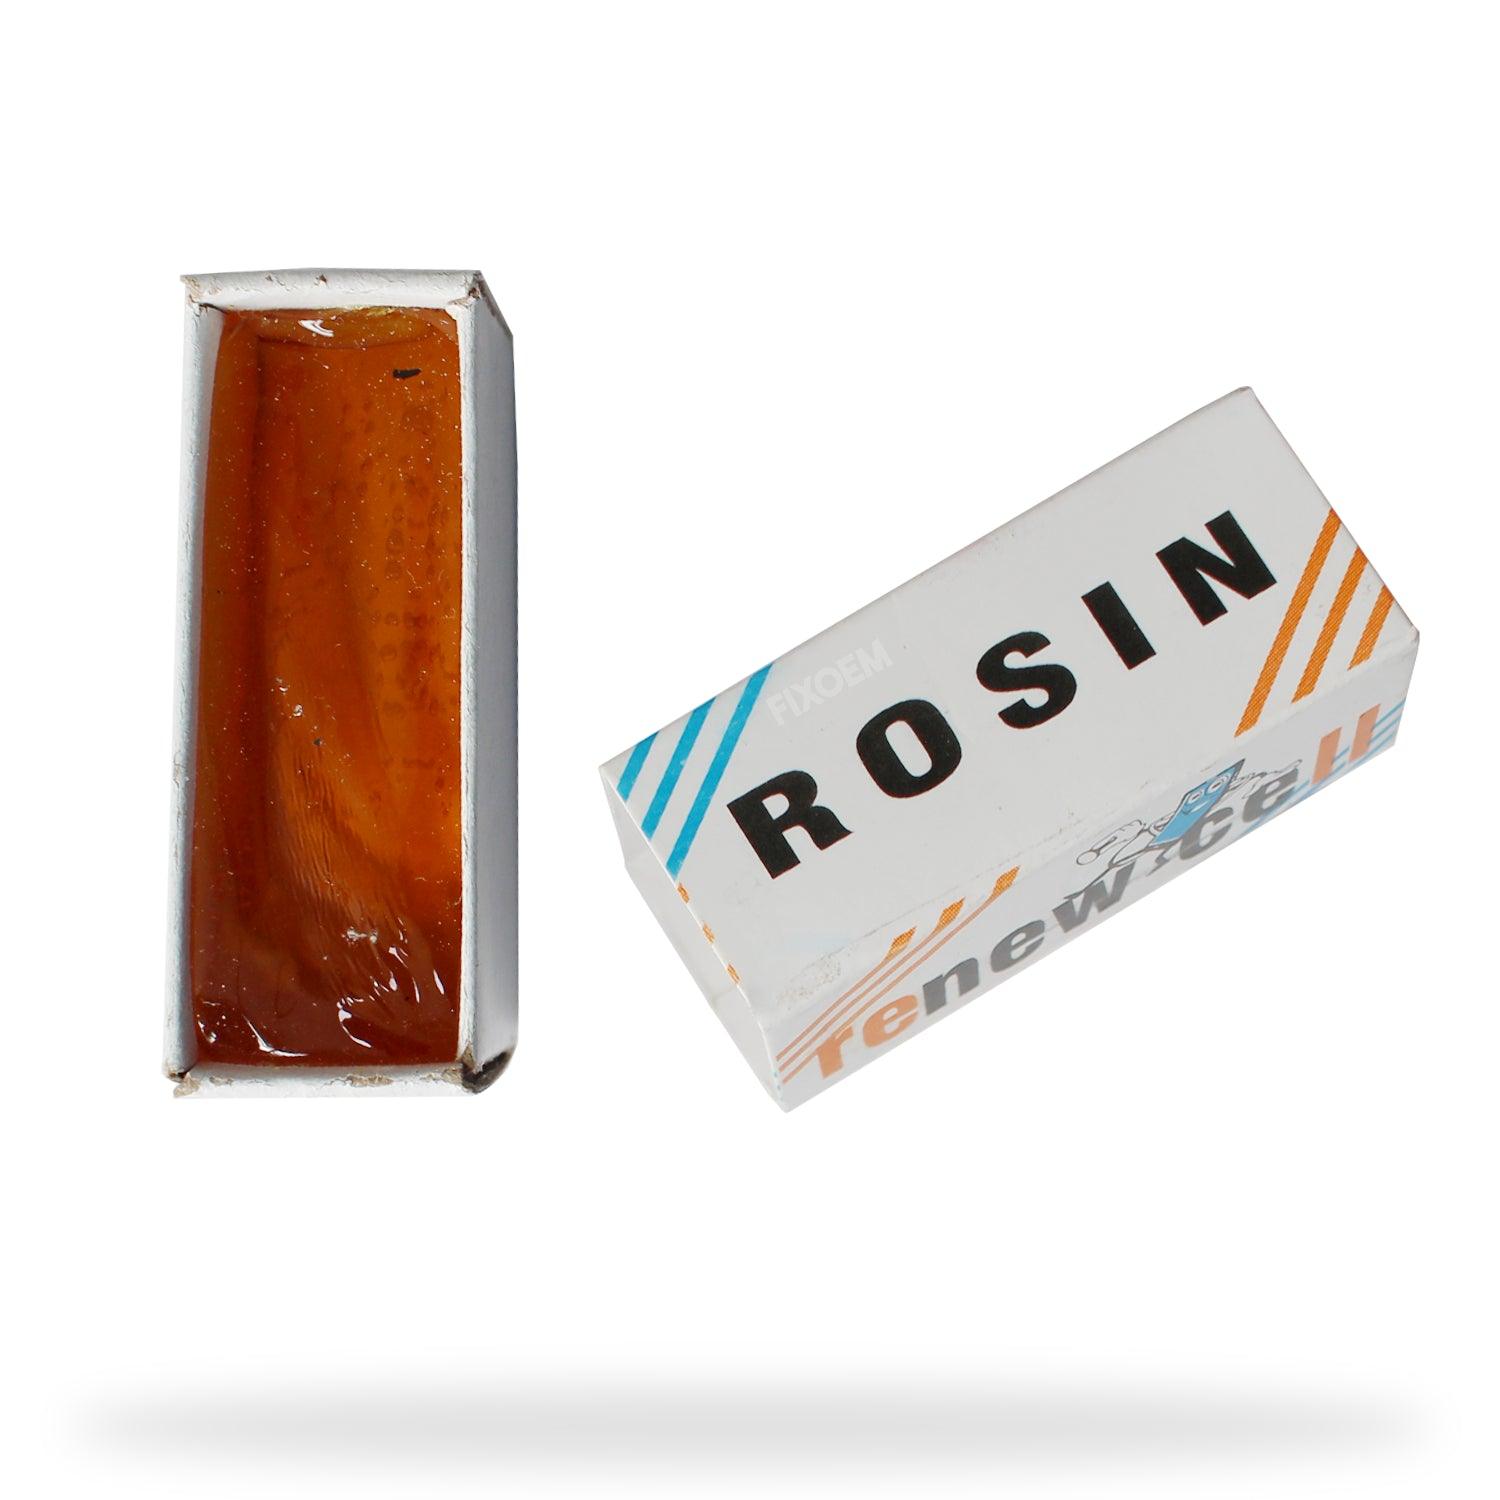 Dispensador Atomizador Rosin a solo $ 65.00 Refaccion y puestos celulares, refurbish y microelectronica.- FixOEM